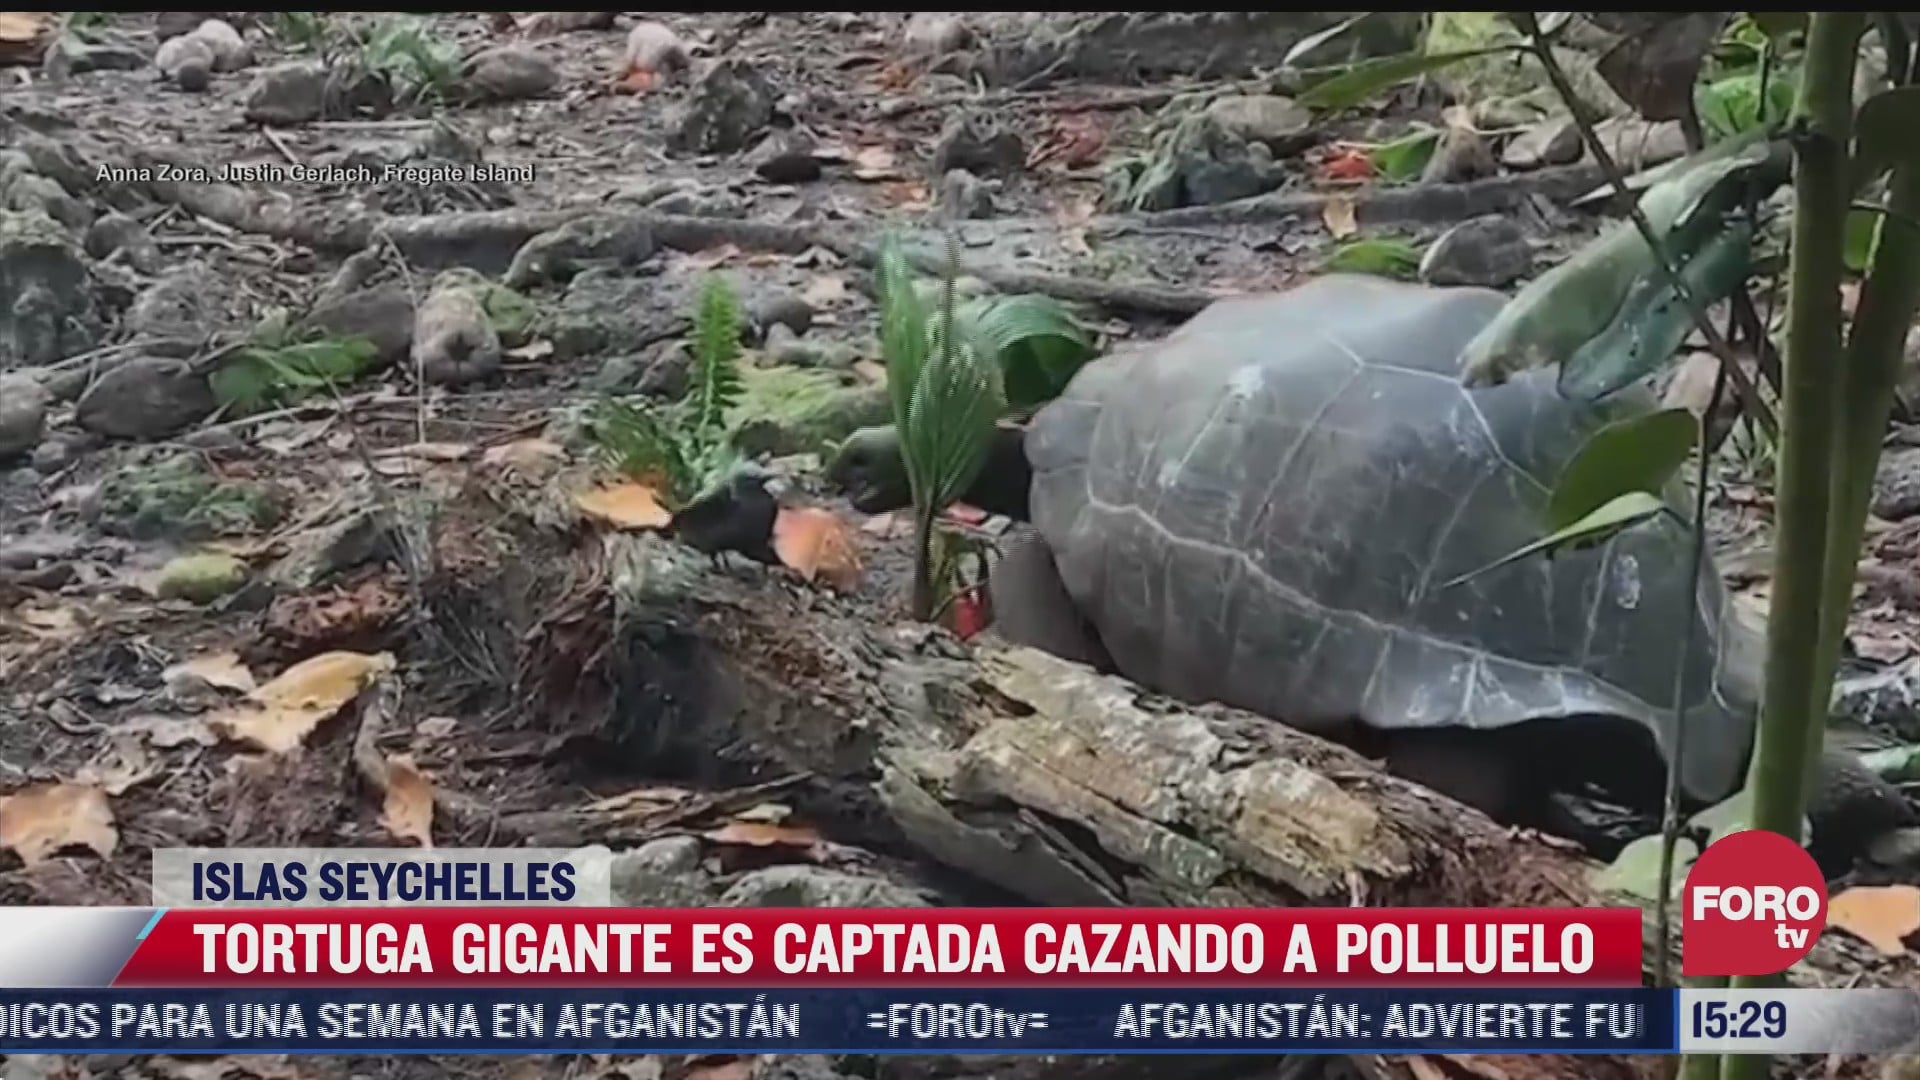 sorprende video que muestra a tortuga gigante cazando a un polluelo